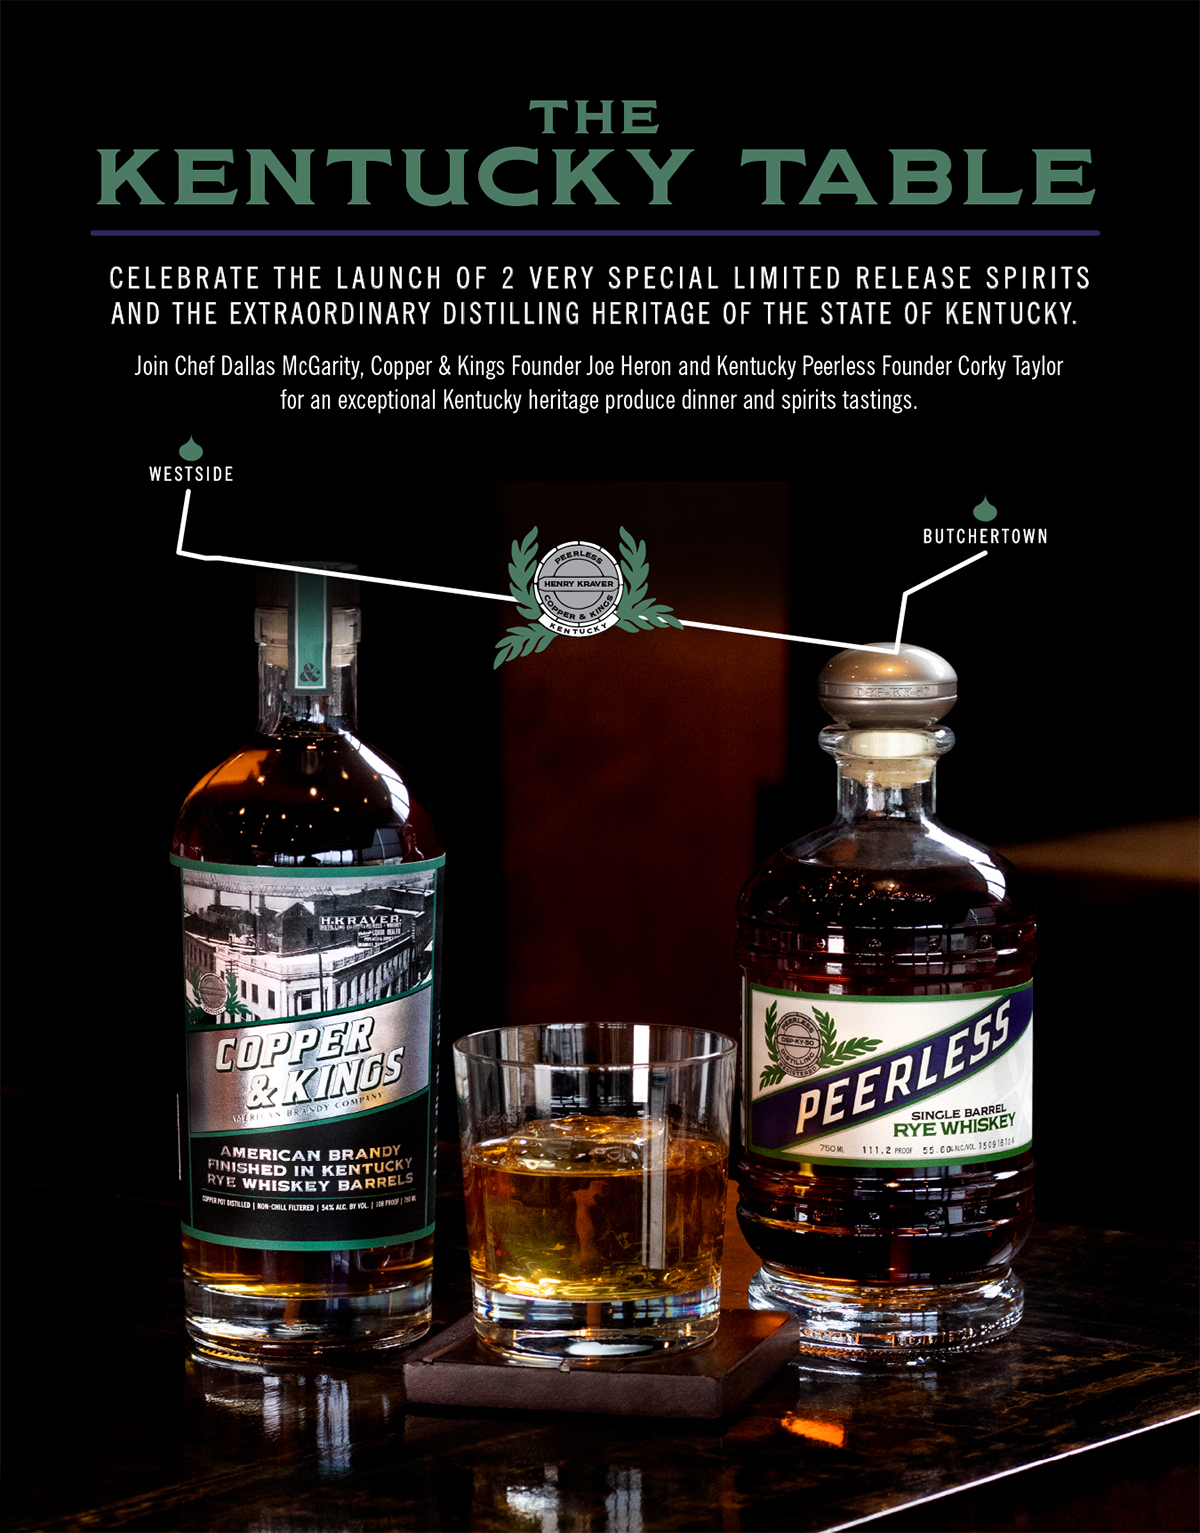 The Kentucky Table